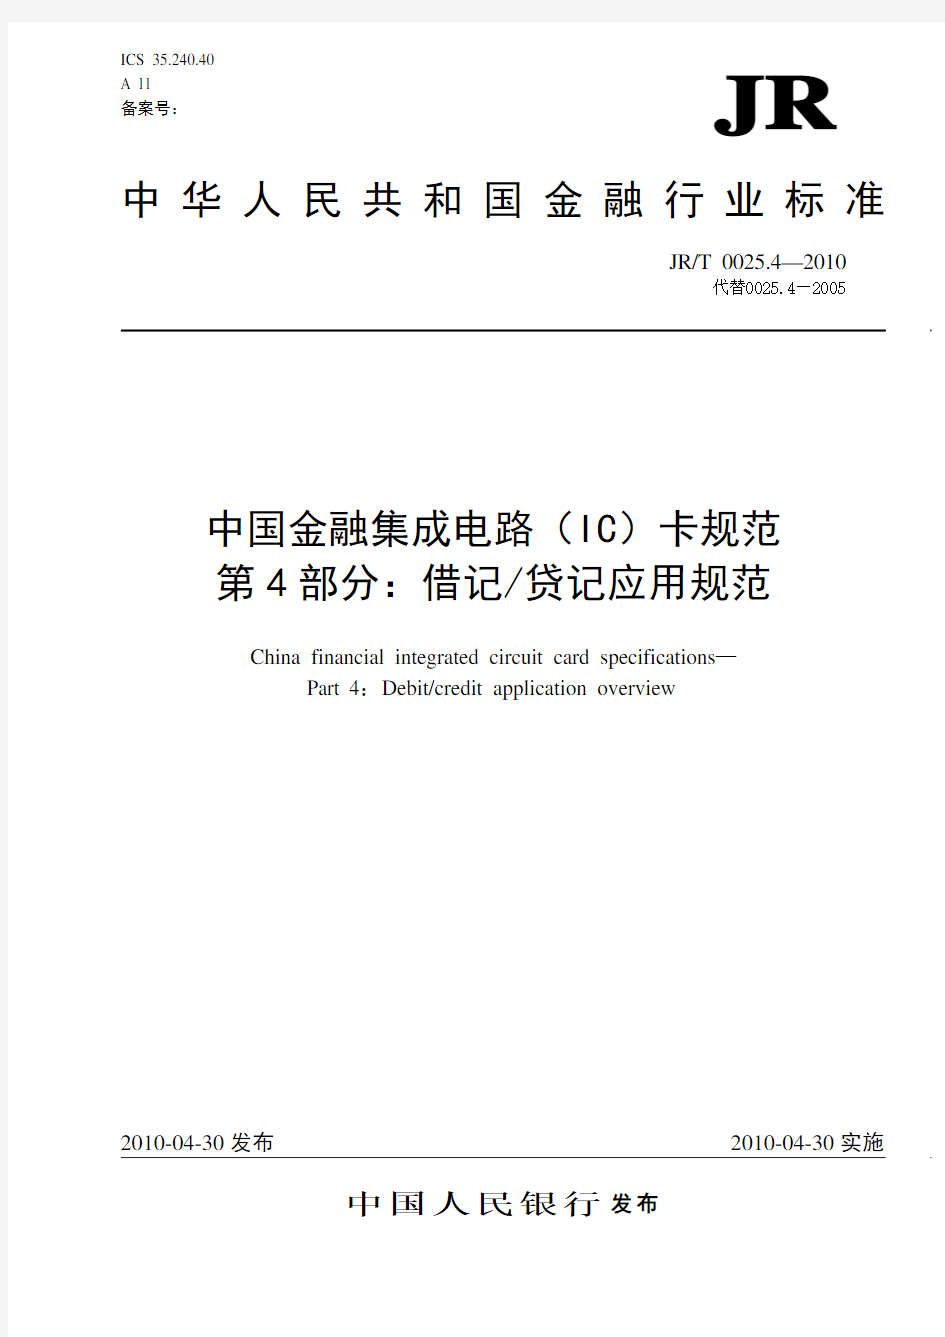 中国金融集成电路(IC)卡规范第4部分(发布稿-20100513)